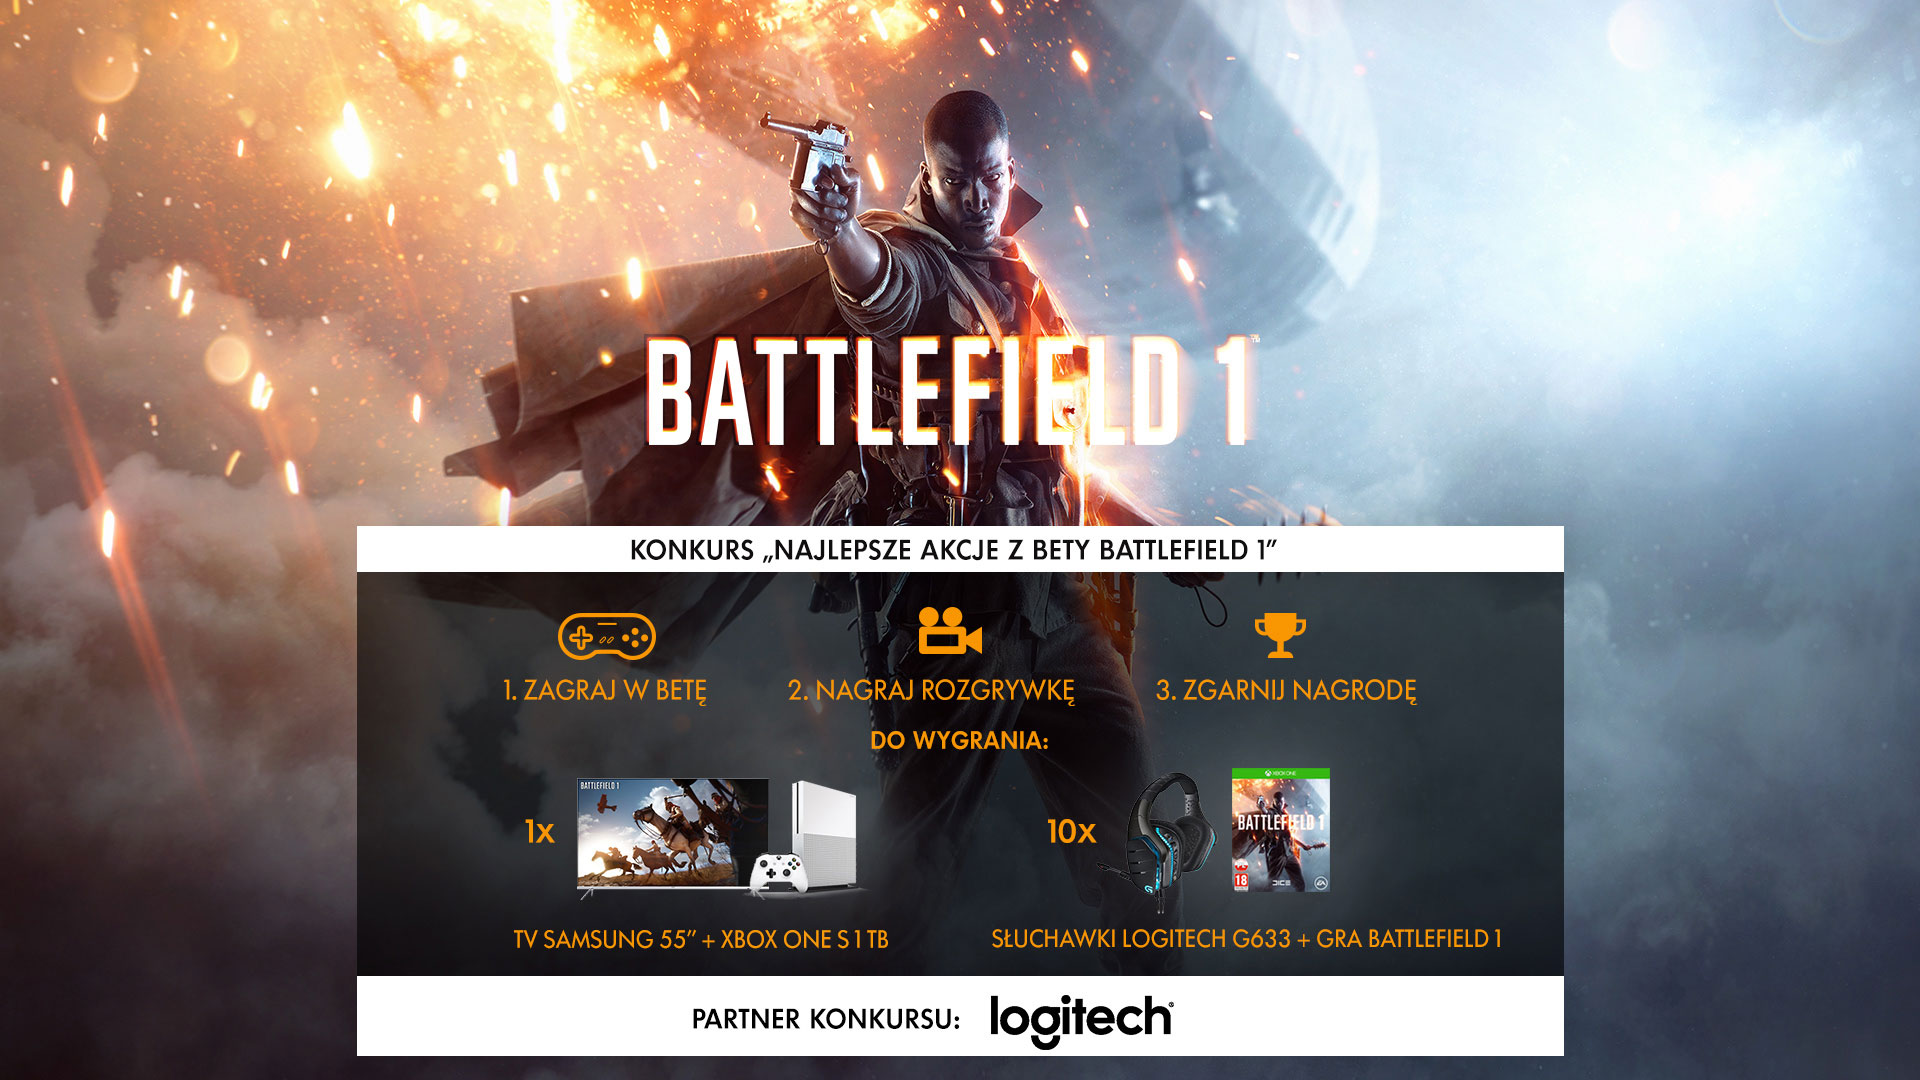 Battlefield 1 - Konkurs